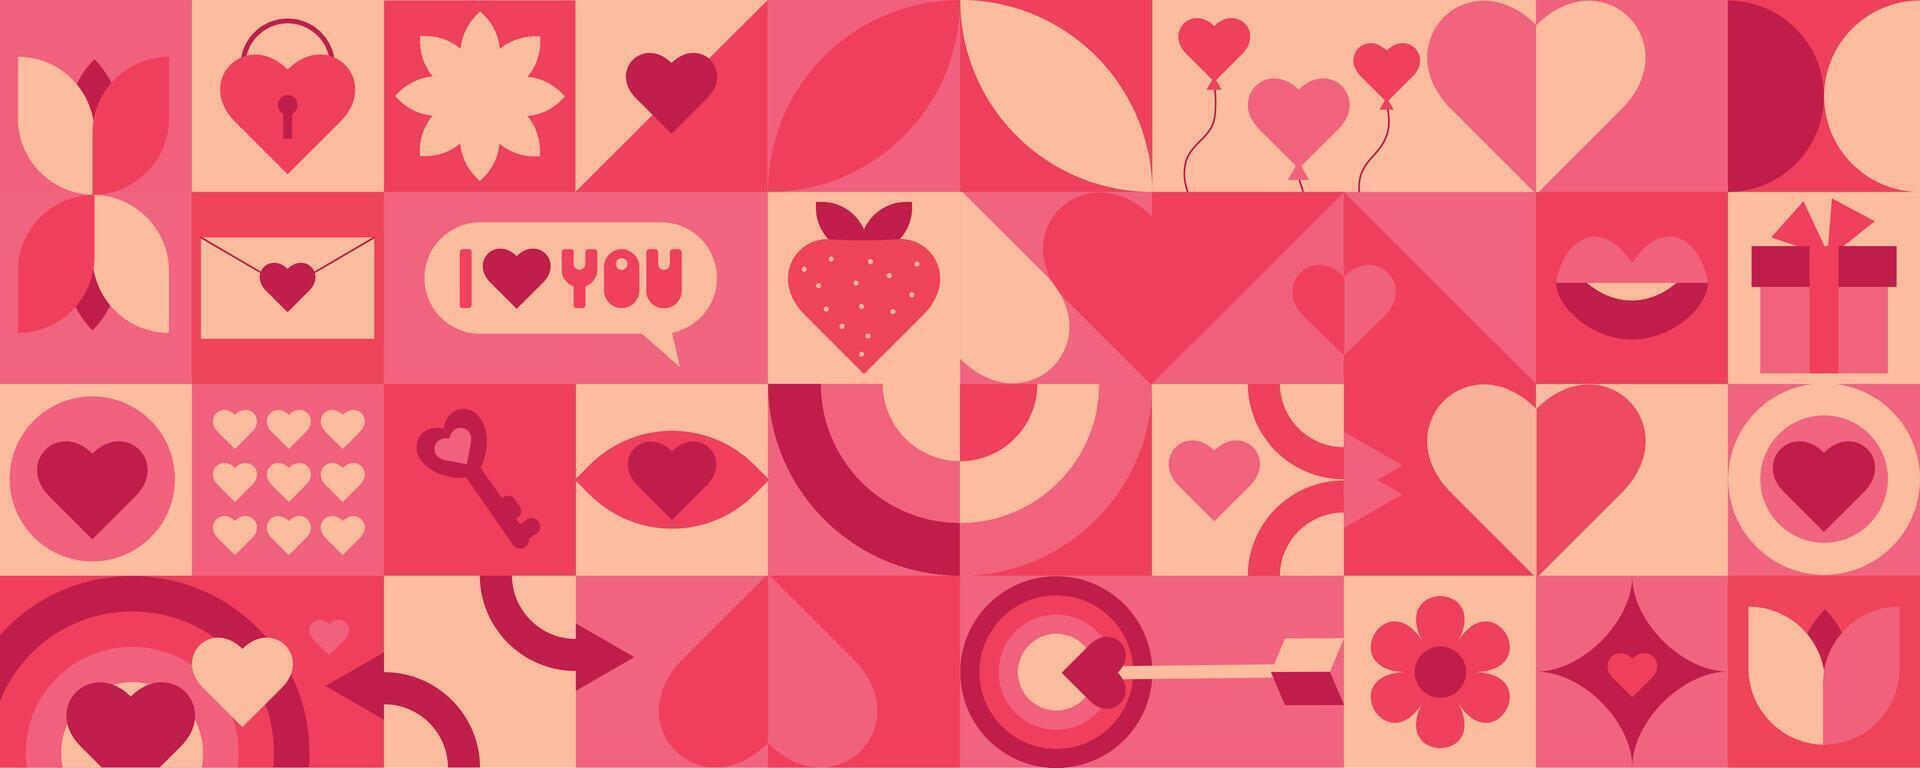 meetkundig naadloos patroon voor Valentijnsdag dag. vector illustratie voor verpakking, omslag, banier, web ontwerp. achtergrond in mozaïek- stijl geometrie hart, lippen, bloem, pijl, ogen.